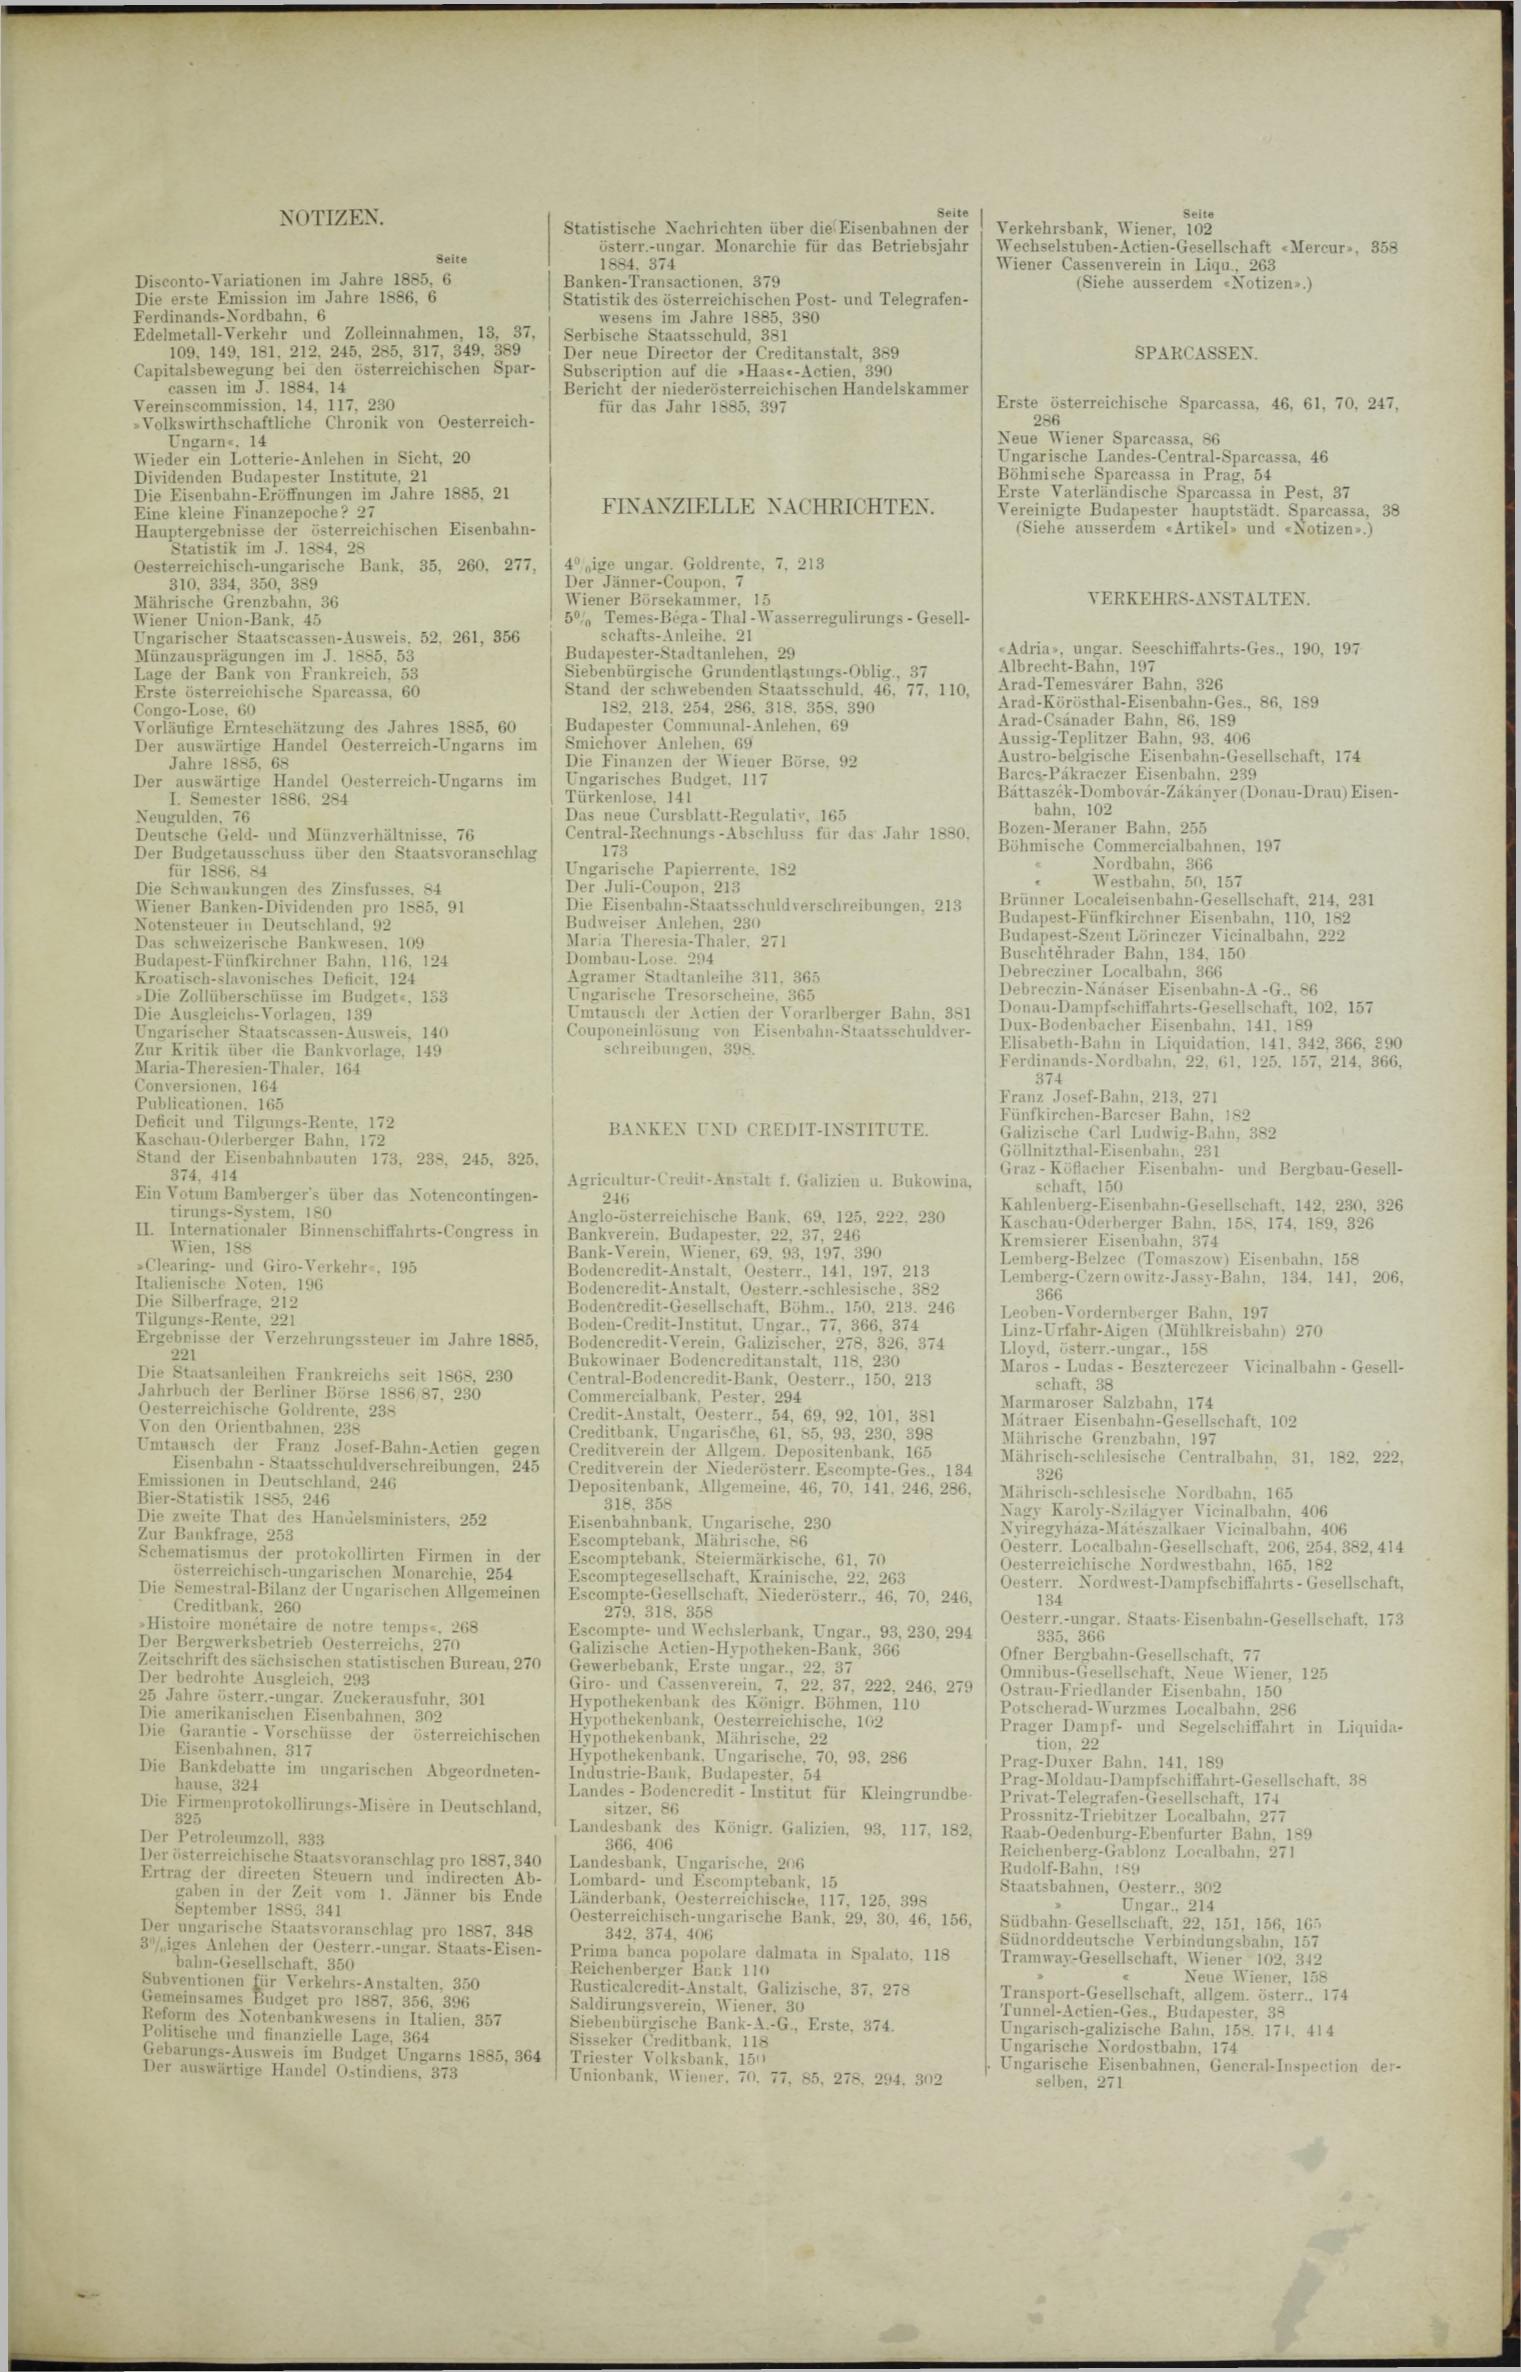 Der Tresor 27.05.1886 - Seite 11